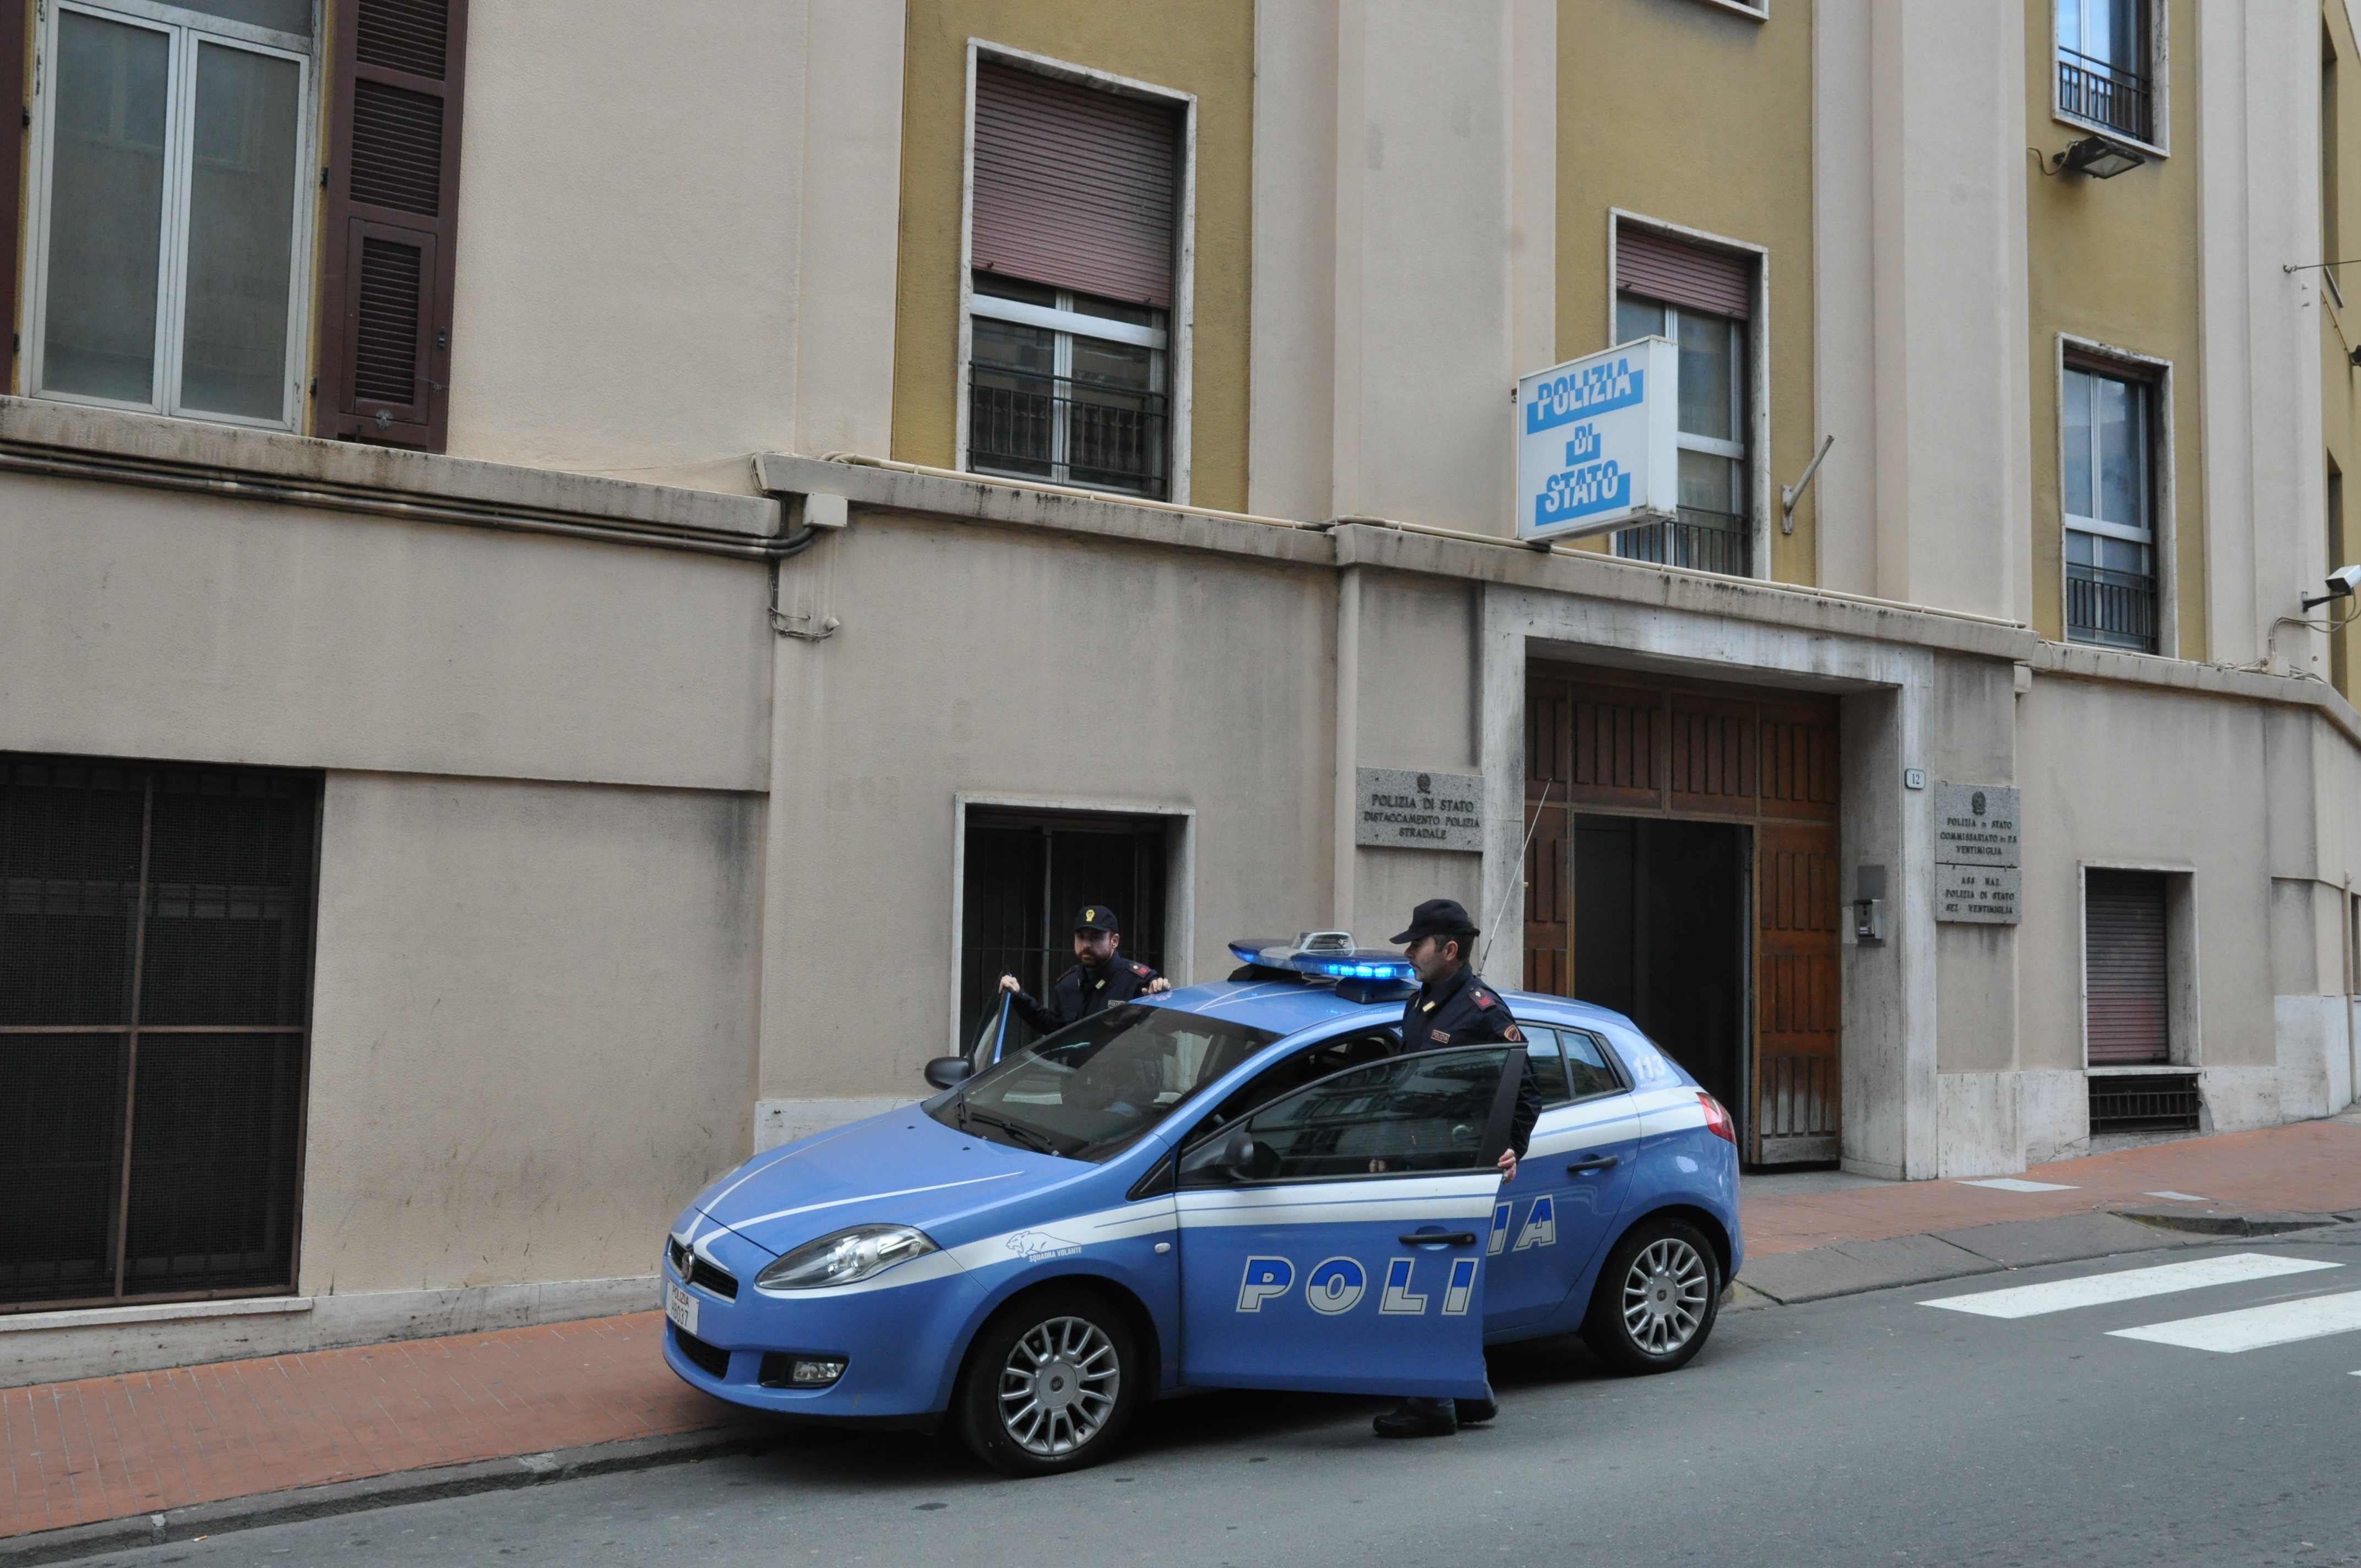 Operazione della Polizia di Stato a Ventimiglia. Donna rapinata e ferita mentre rientra a casa. Individuato e arrestato un cittadino algerino, richiedente asilo, di 19 anni.